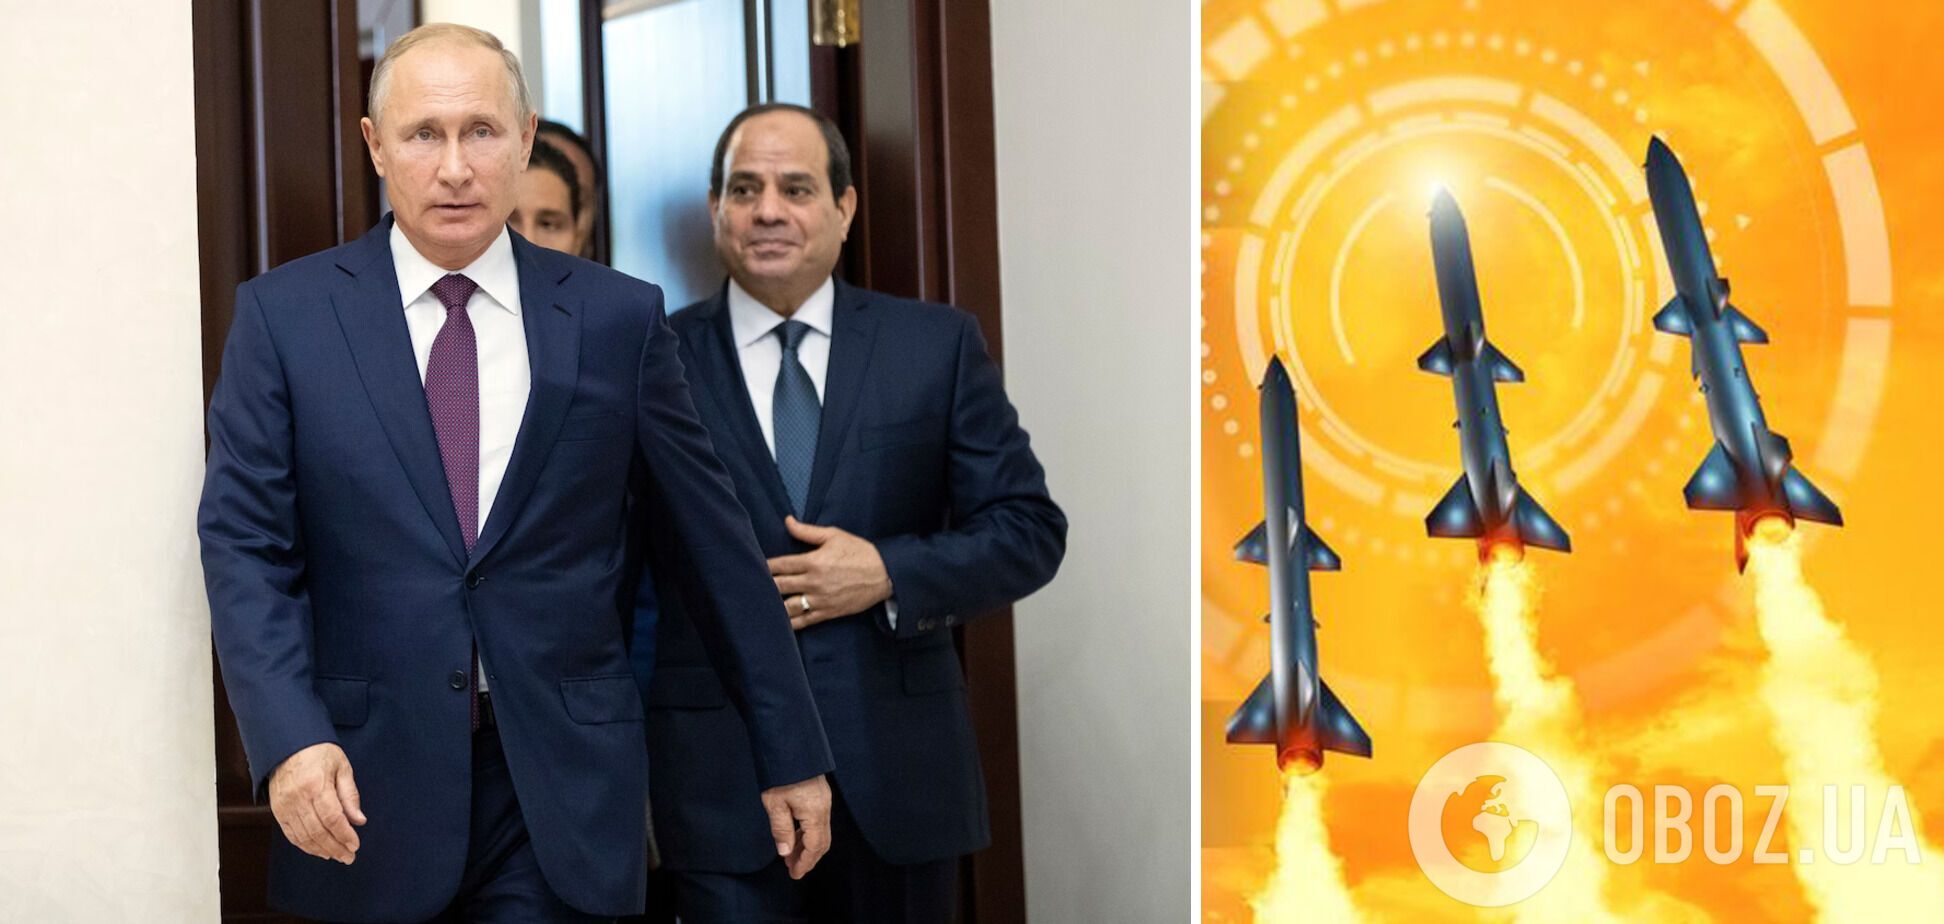 Египет планировал предоставить России до 40 тыс. ракет: утечка секретных документов раскрыла громкую схему – WP